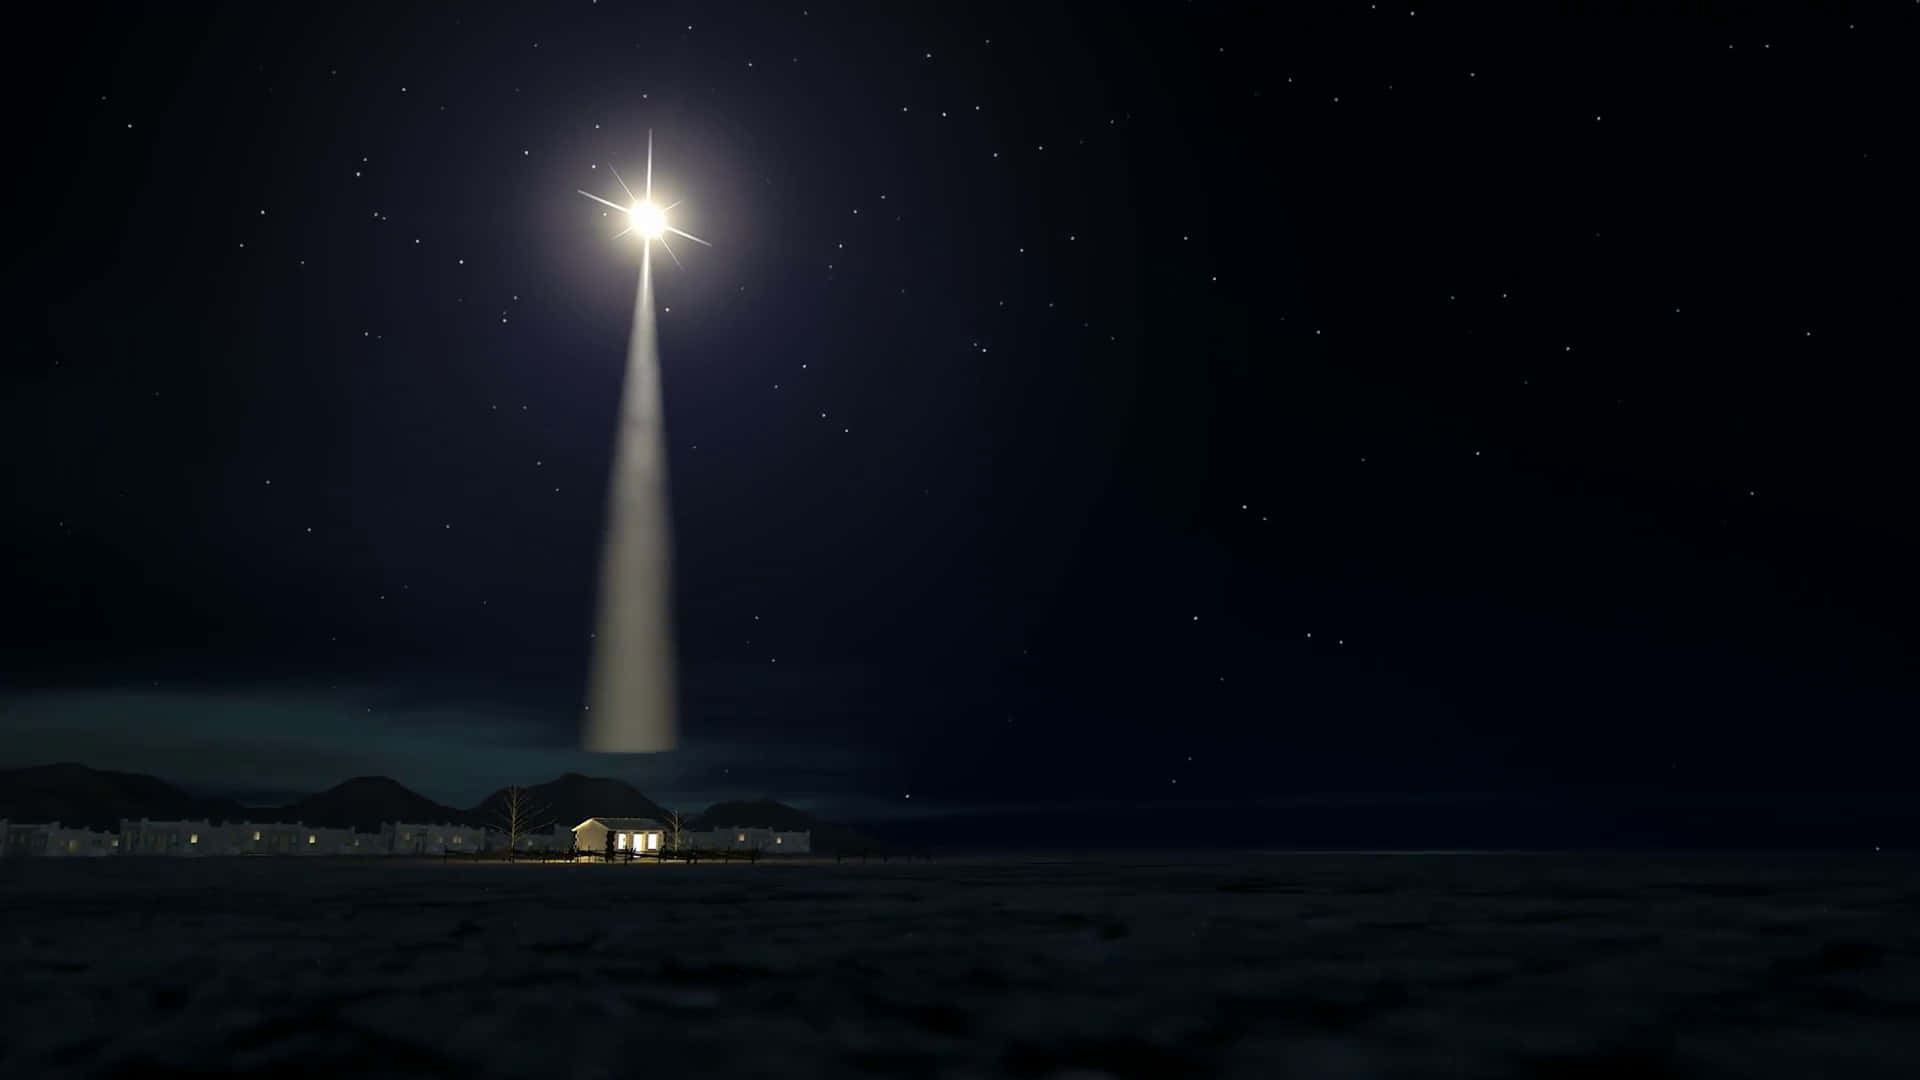 Entraditionel Julekrybbe, Der Fejrer Fødslen Af Jesus.